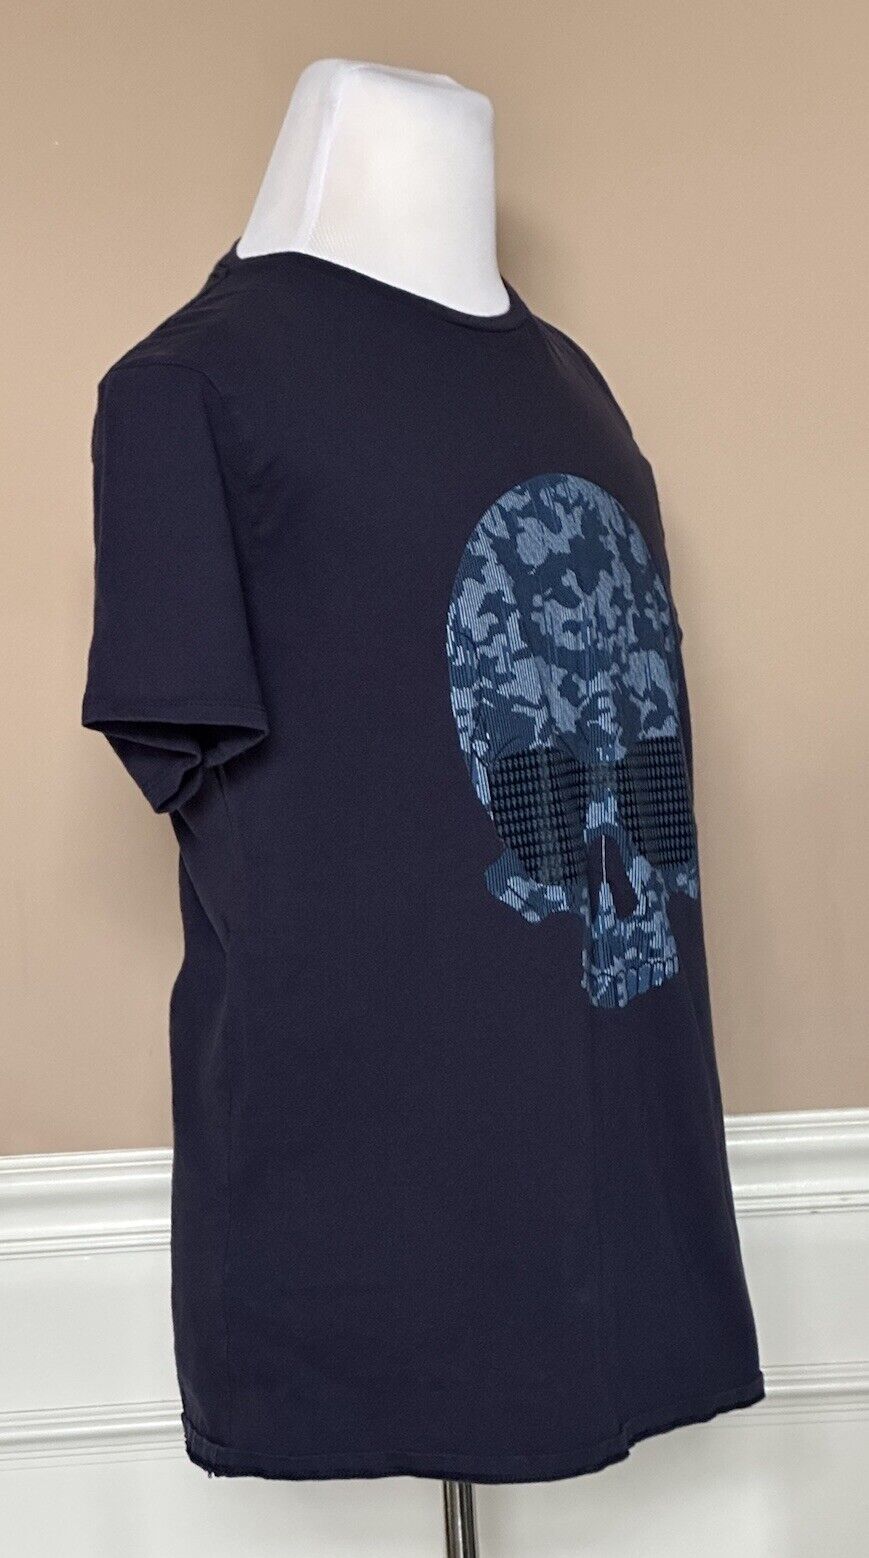 Karl Lagerfeld Skull Logo T-Shirt Size Large Blue